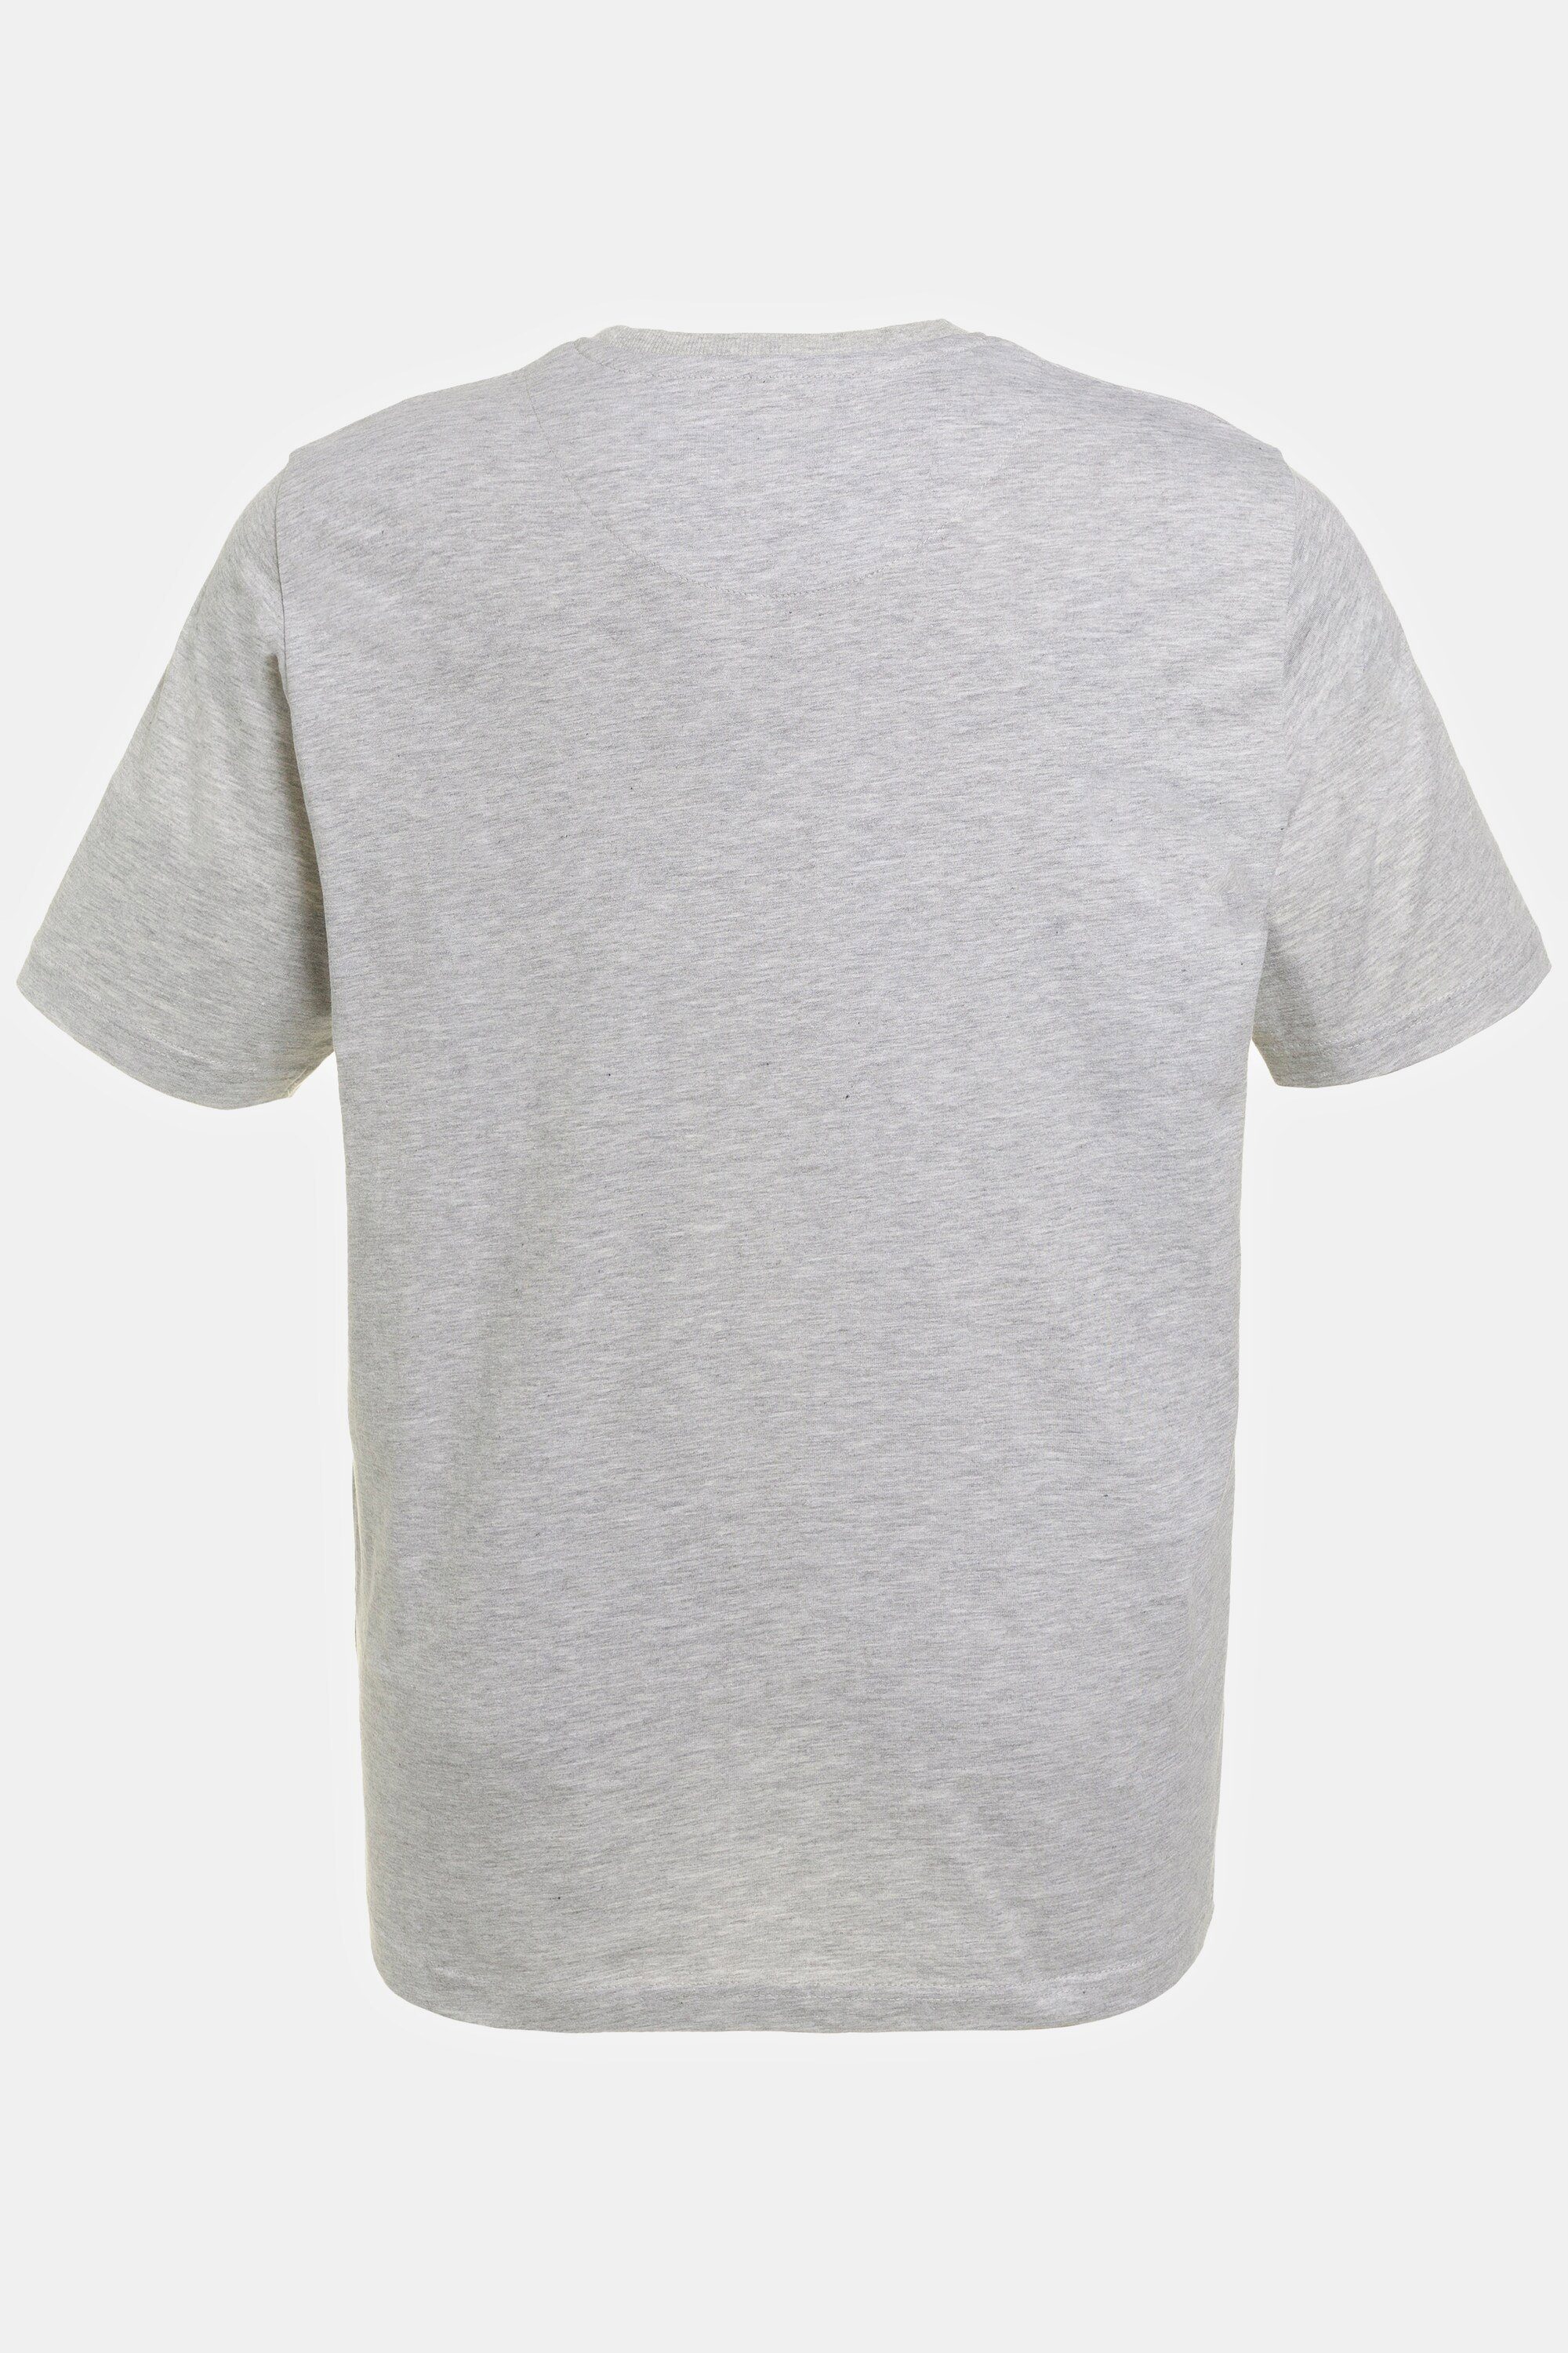 Rundhals Palme JP1880 T-Shirt Halbarm Beachwear T-Shirt